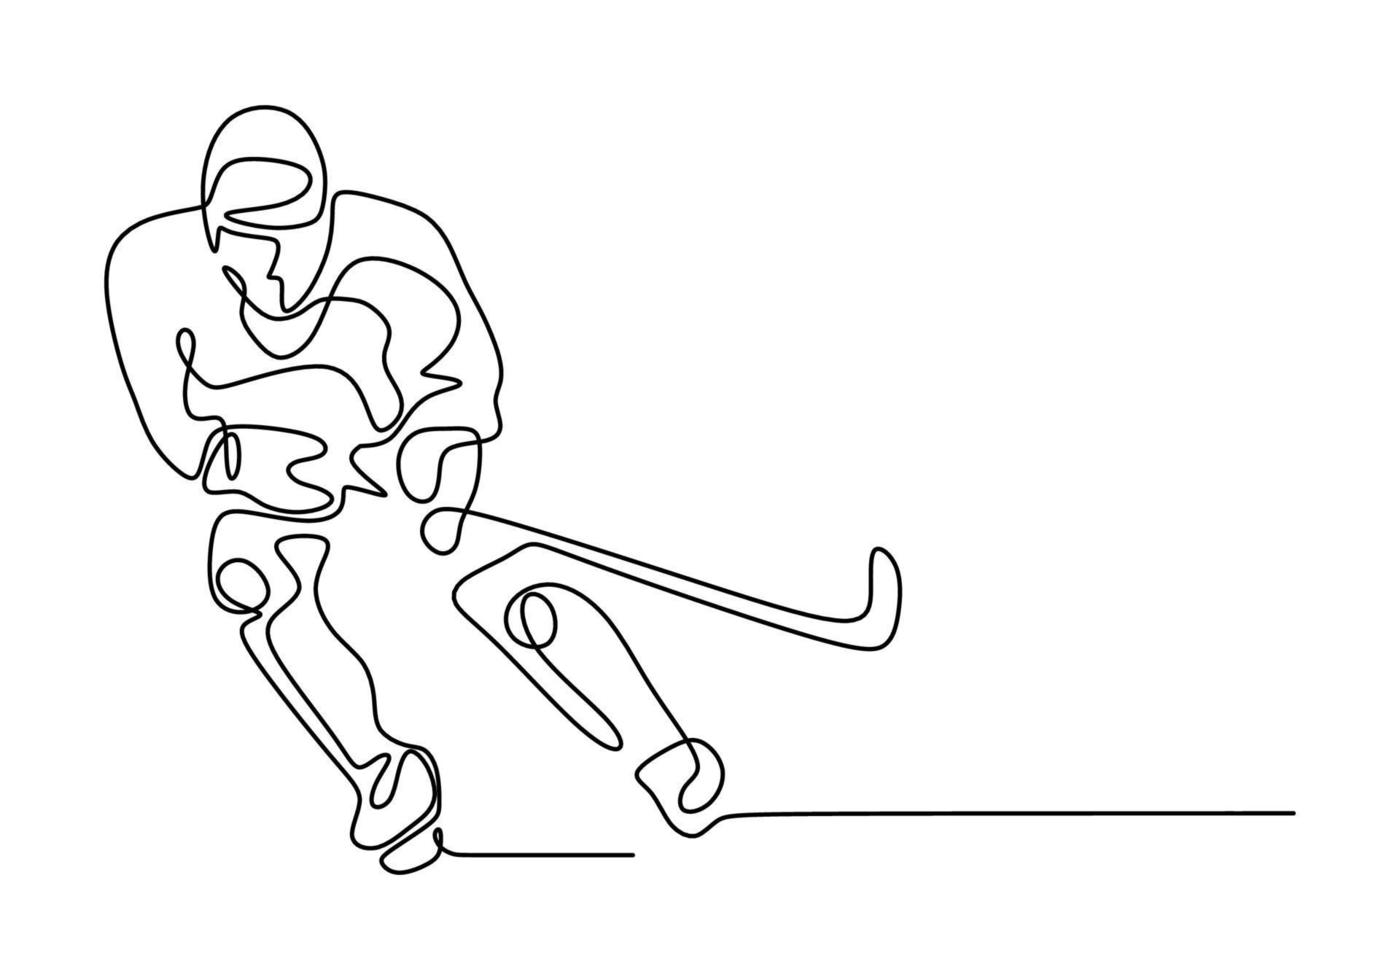 homme jouant au hockey sur glace. dessin au trait continu vecteur